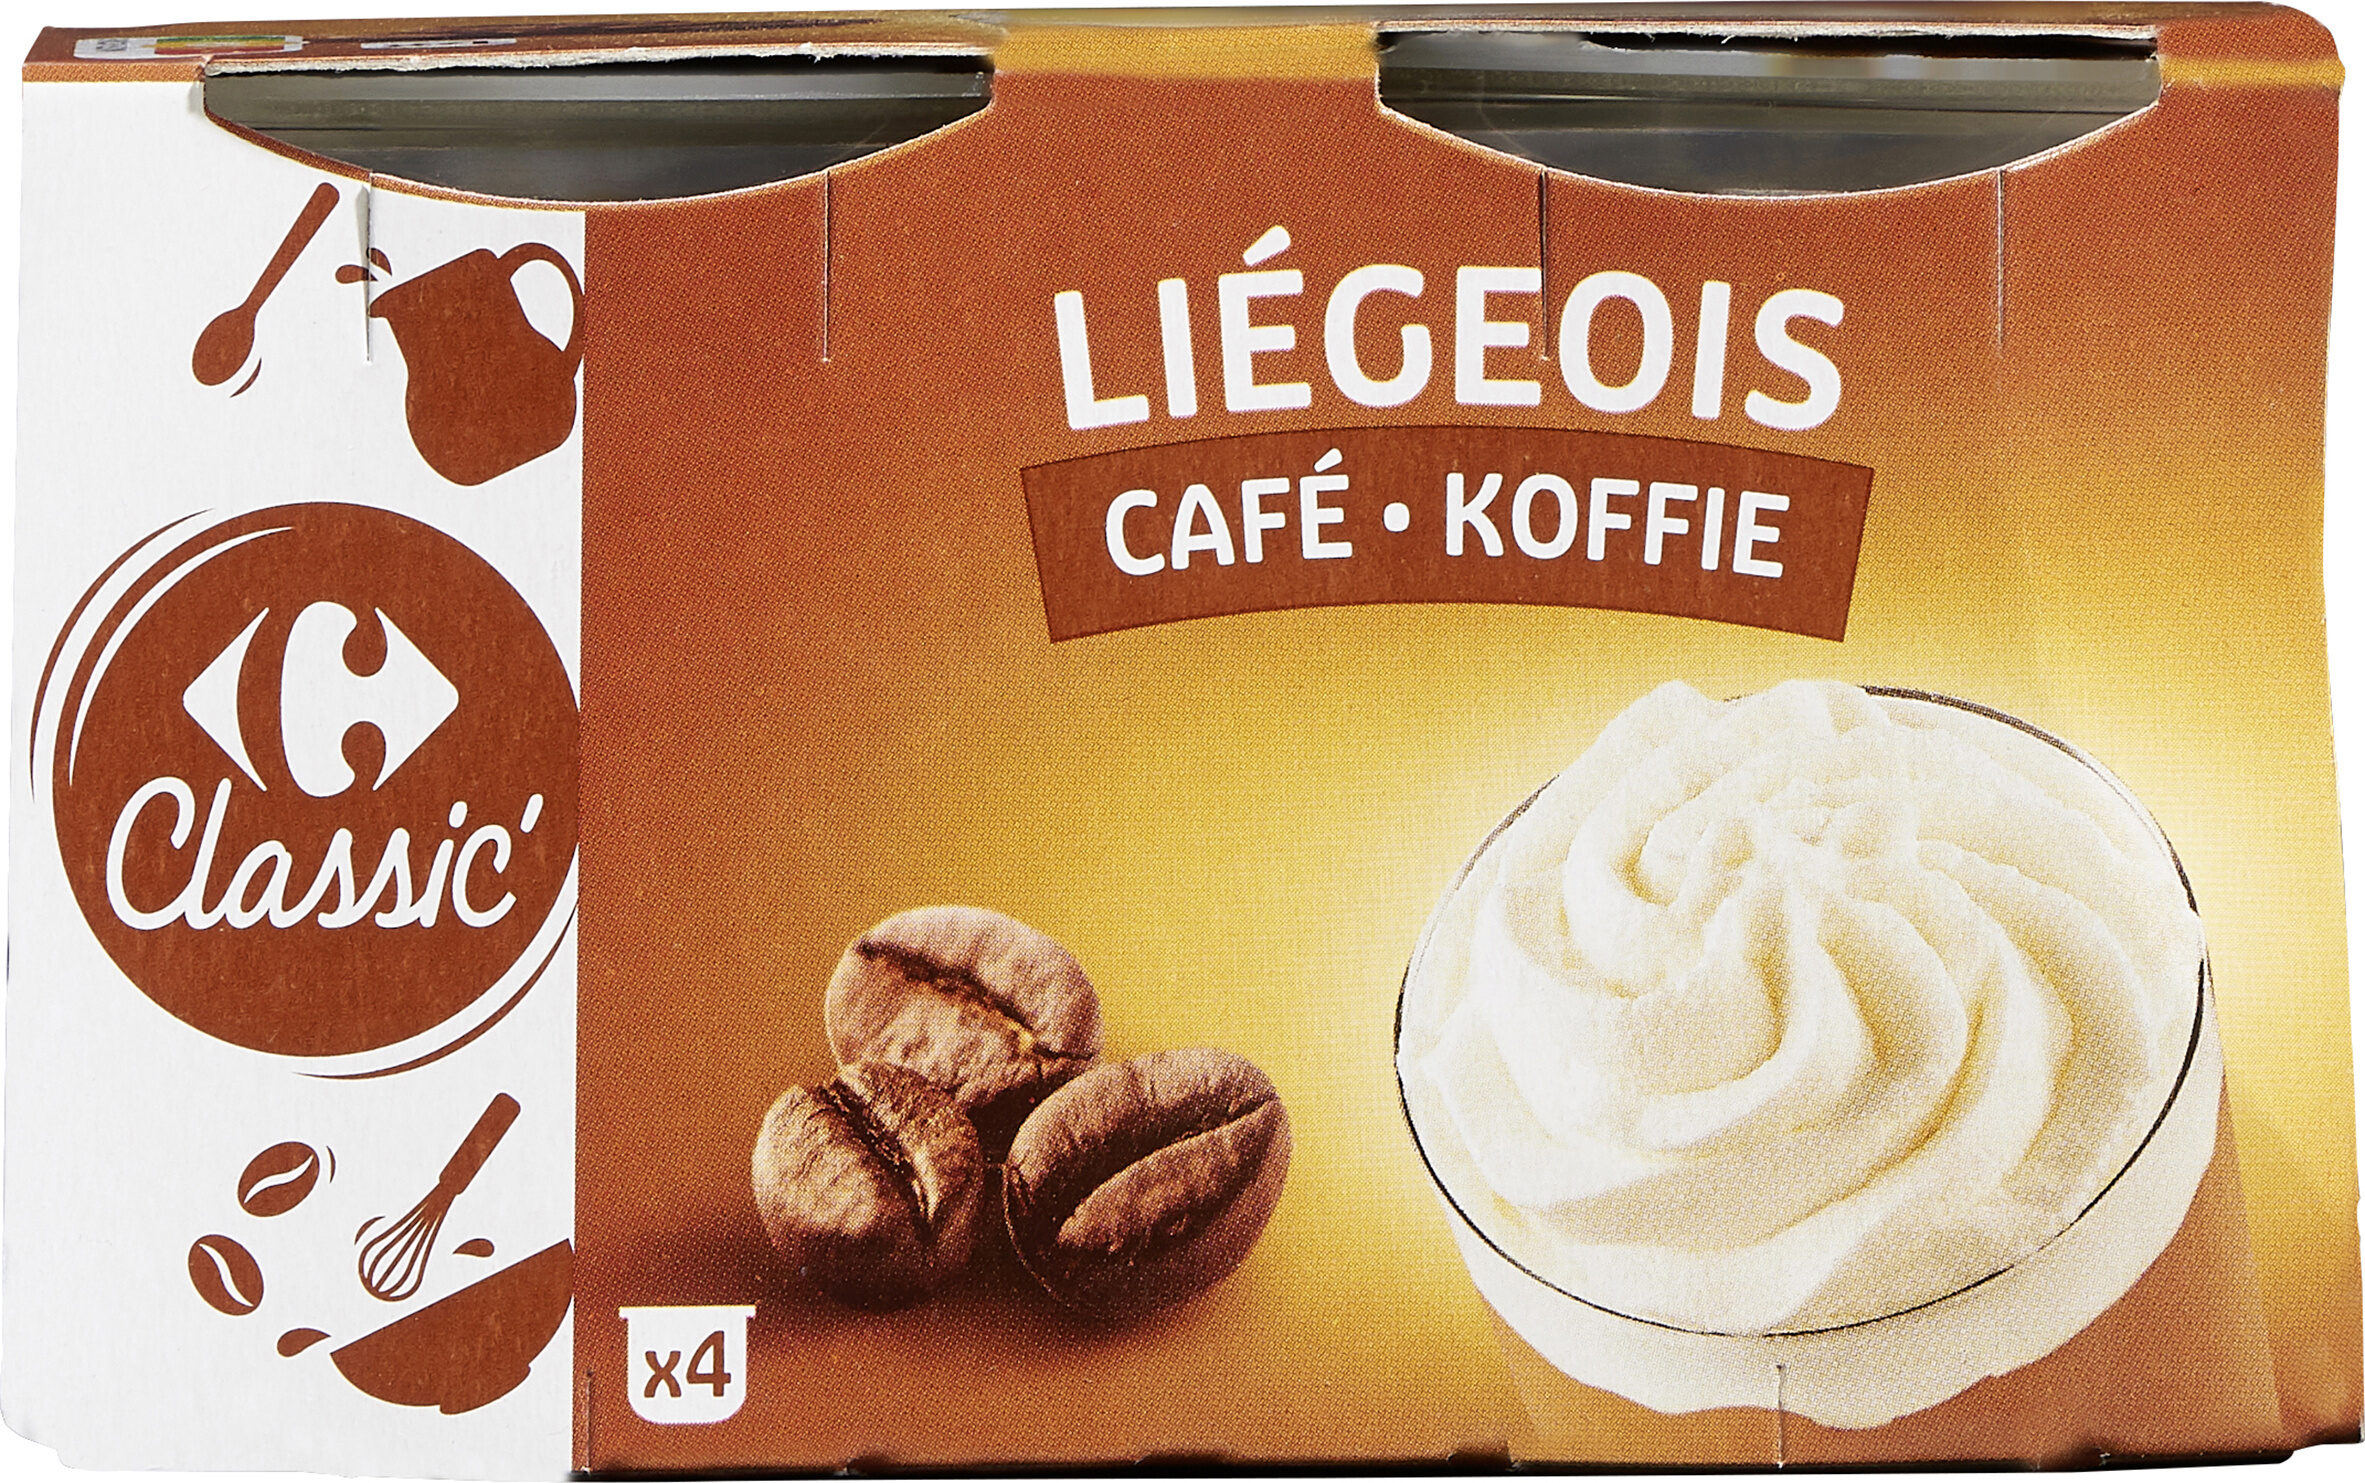 Liégeois café - Product - fr